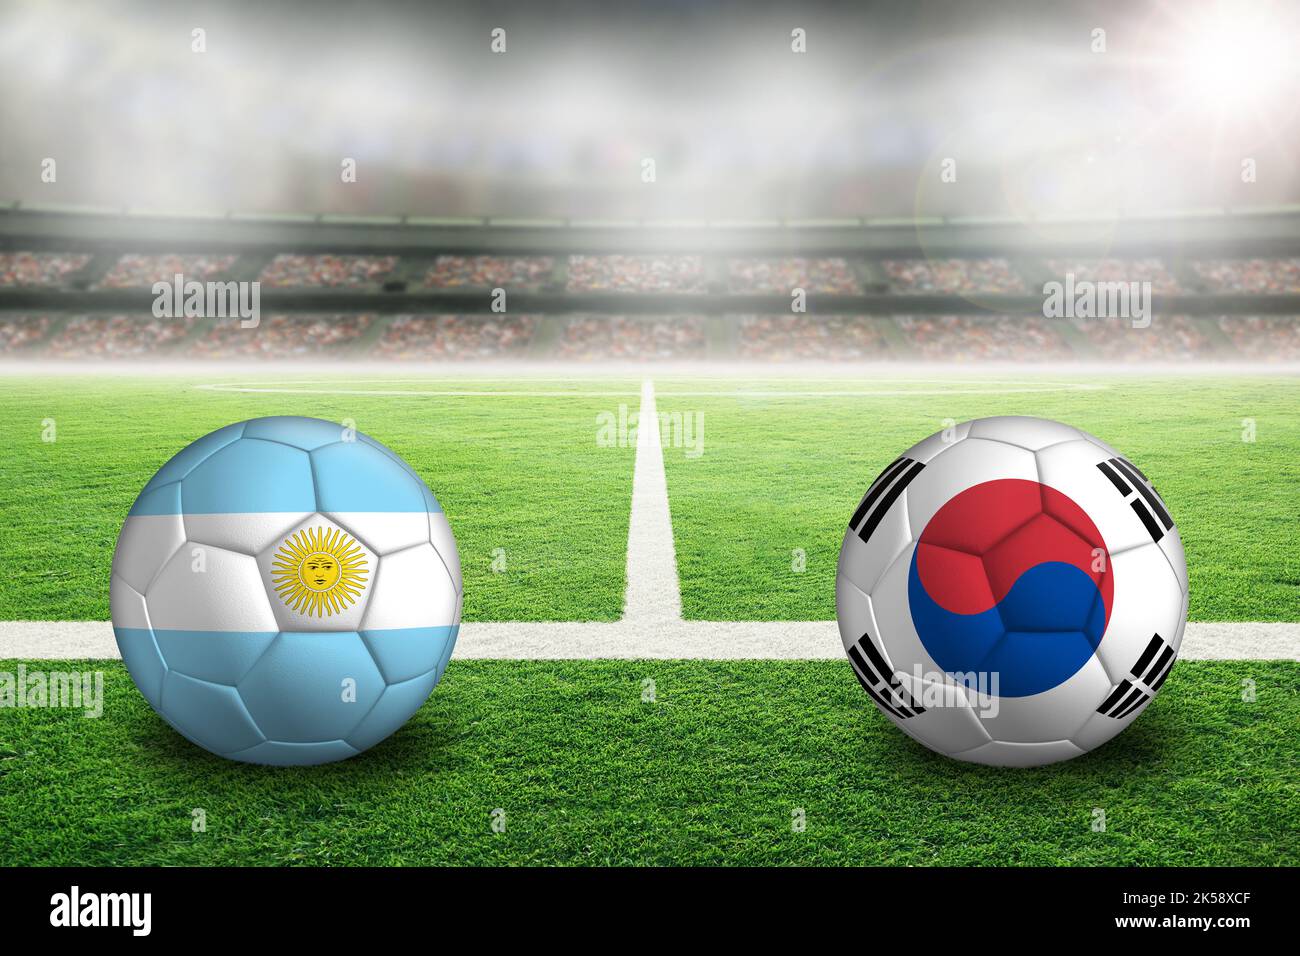 Uruguay vs Corea Repubblica di calcio in uno stadio all'aperto illuminato con bandiere dipinte sudcoreane e uruguaiane. Focus su primo piano e palla da calcio Foto Stock